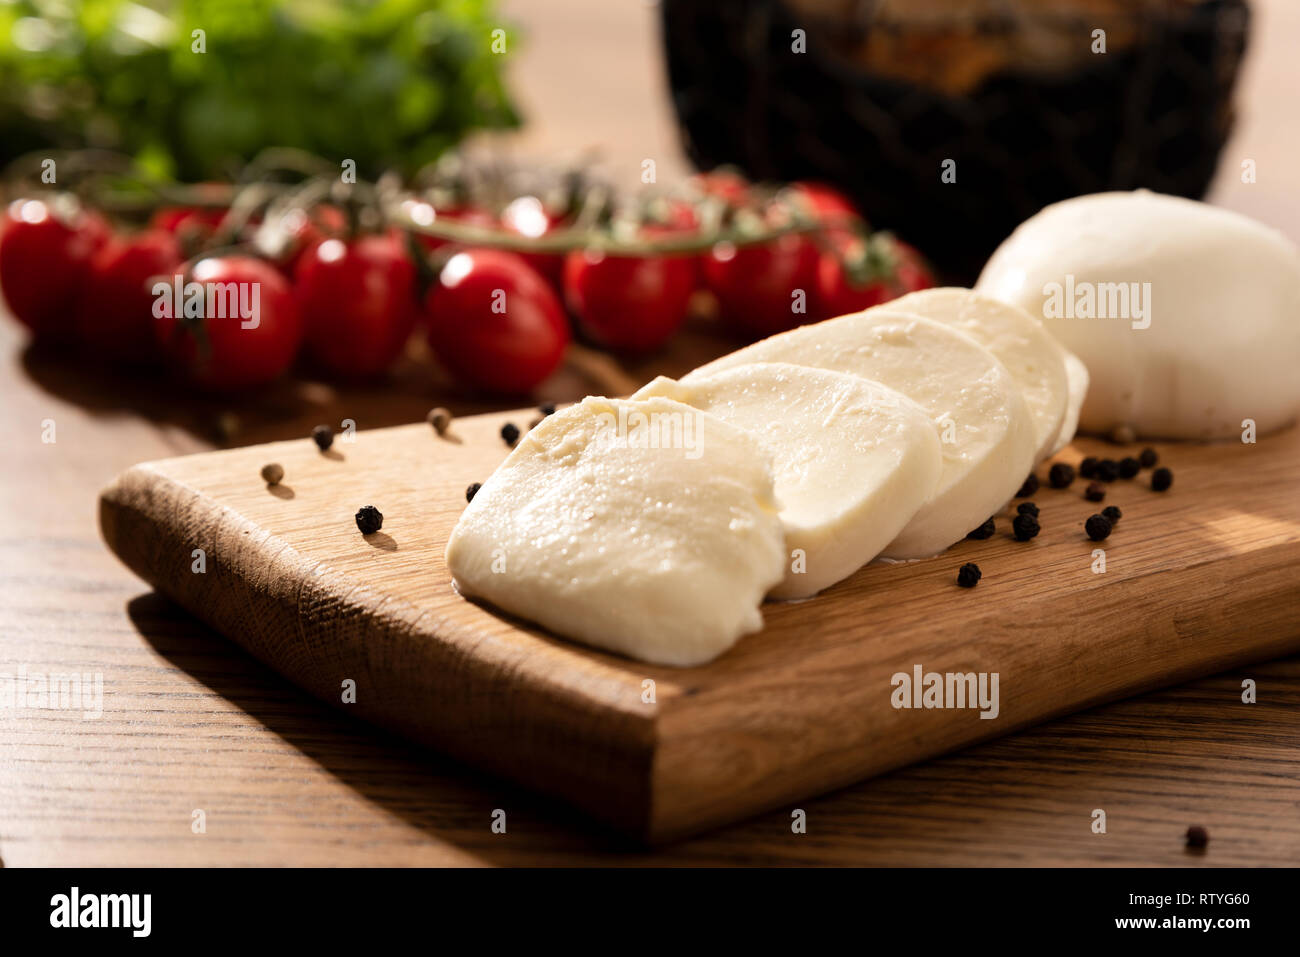 Le mozzarella sur planche en bois. Tomates cerises en arrière-plan. Table en bois avec la composition des aliments italiens Banque D'Images